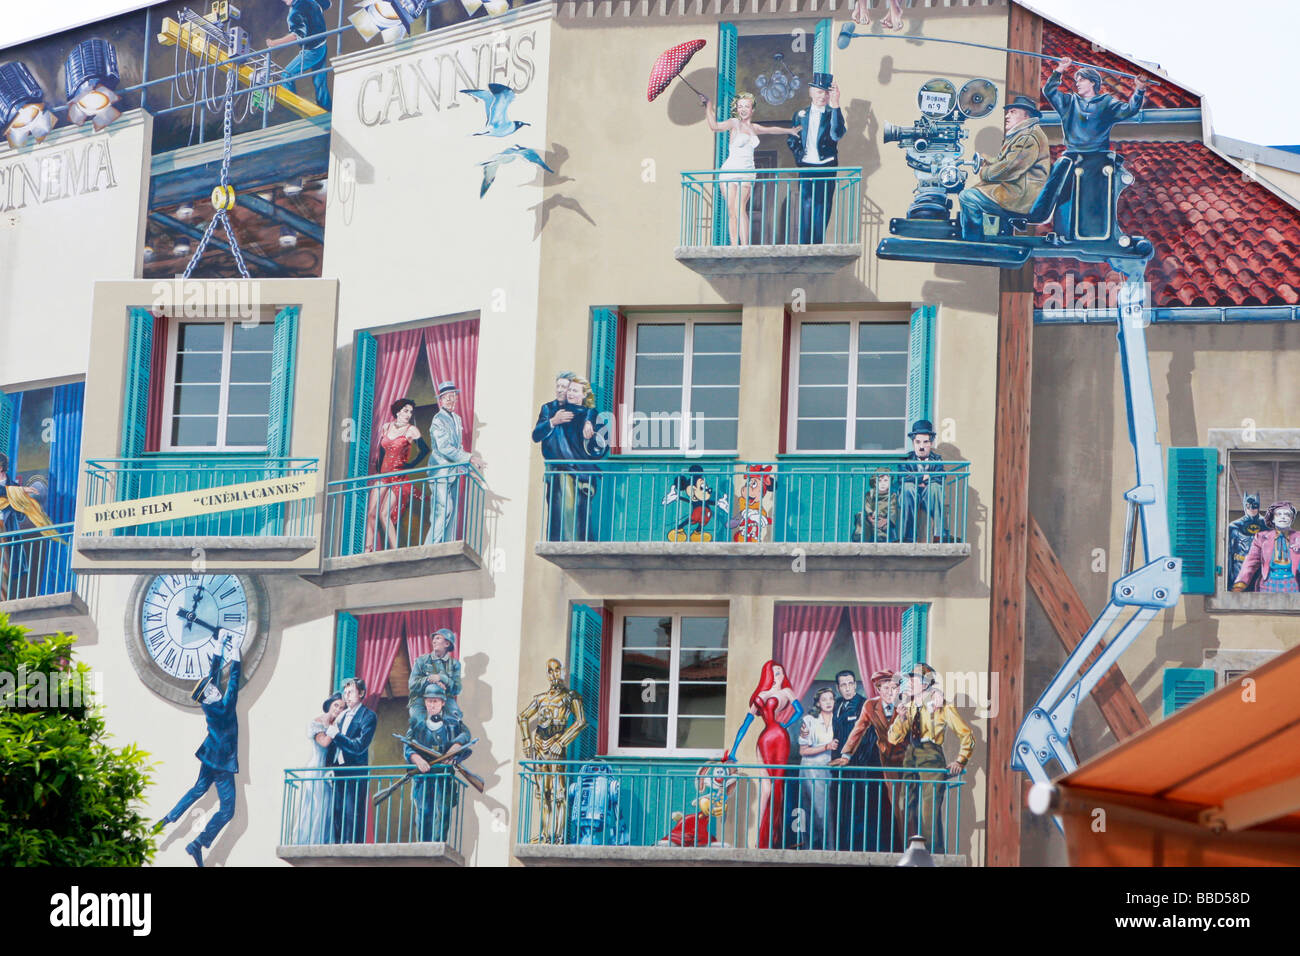 Luminoso,divertente,vivace murales su un edificio di Cannes,Francia,si riferiscono al famoso Festival del Cinema di Cannes si tiene ogni anno nella città Foto Stock